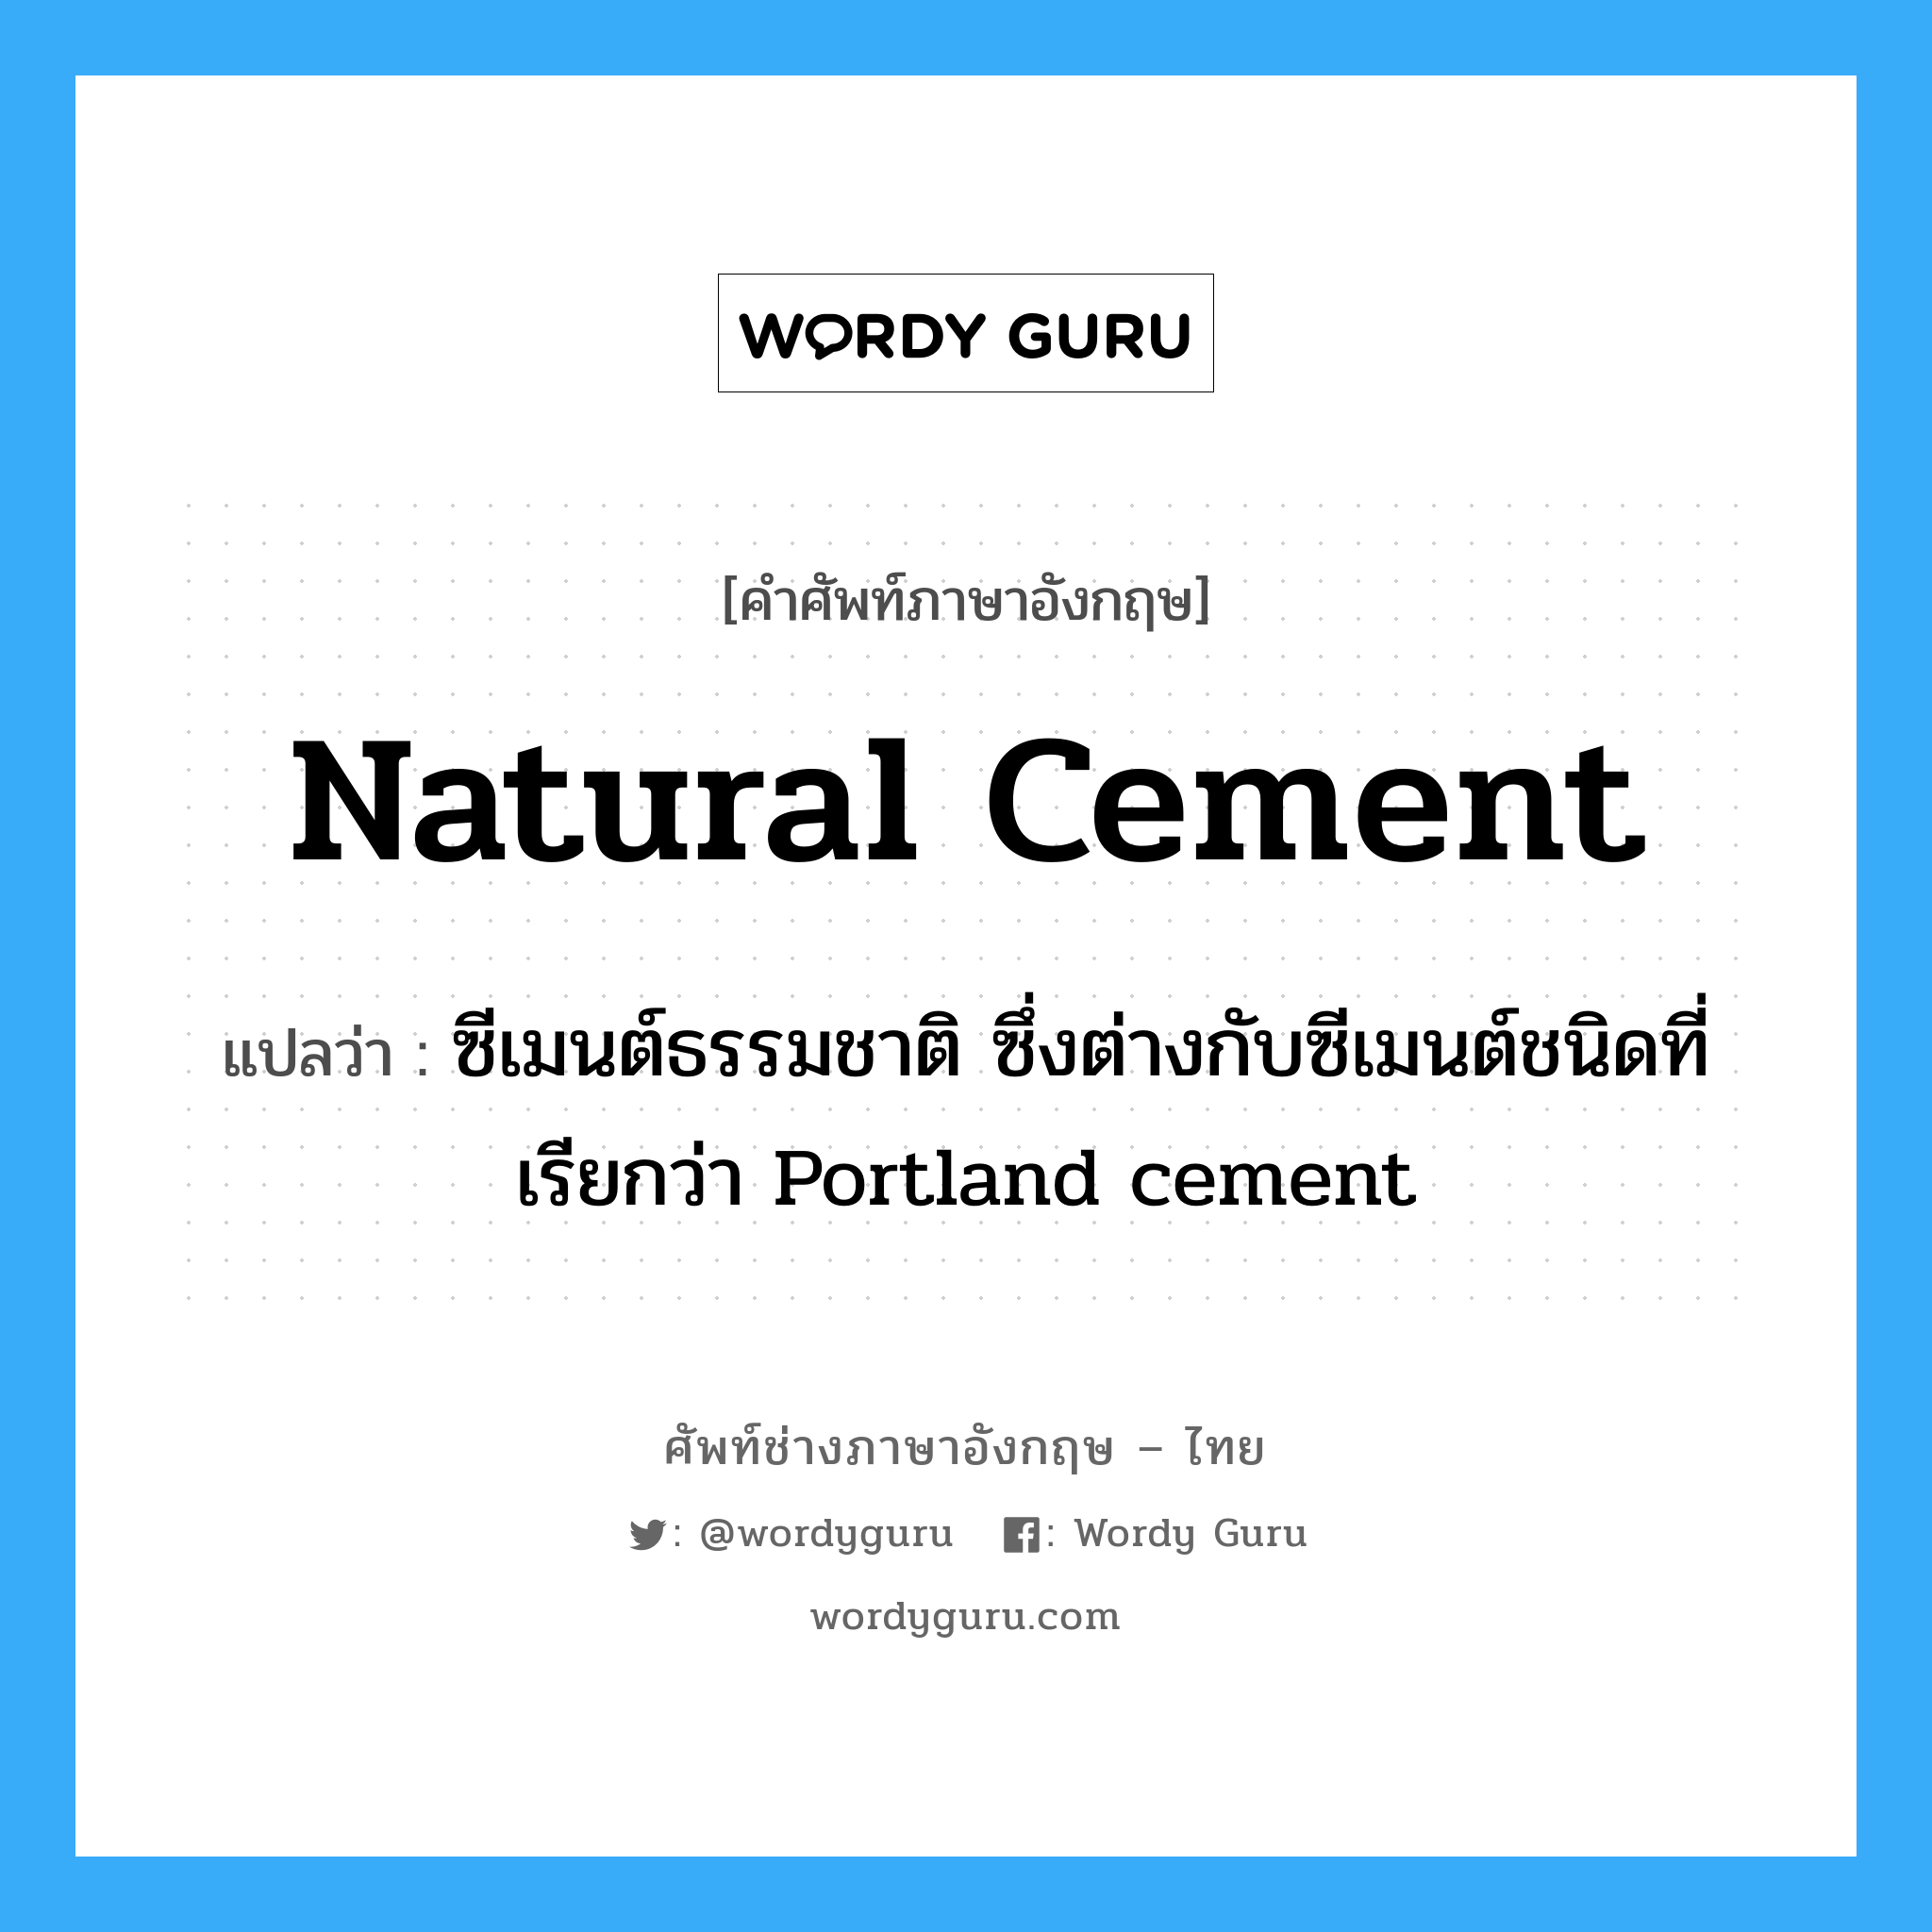 natural cement แปลว่า?, คำศัพท์ช่างภาษาอังกฤษ - ไทย natural cement คำศัพท์ภาษาอังกฤษ natural cement แปลว่า ซีเมนต์ธรรมชาติ ซึ่งต่างกับซีเมนต์ชนิดที่เรียกว่า Portland cement